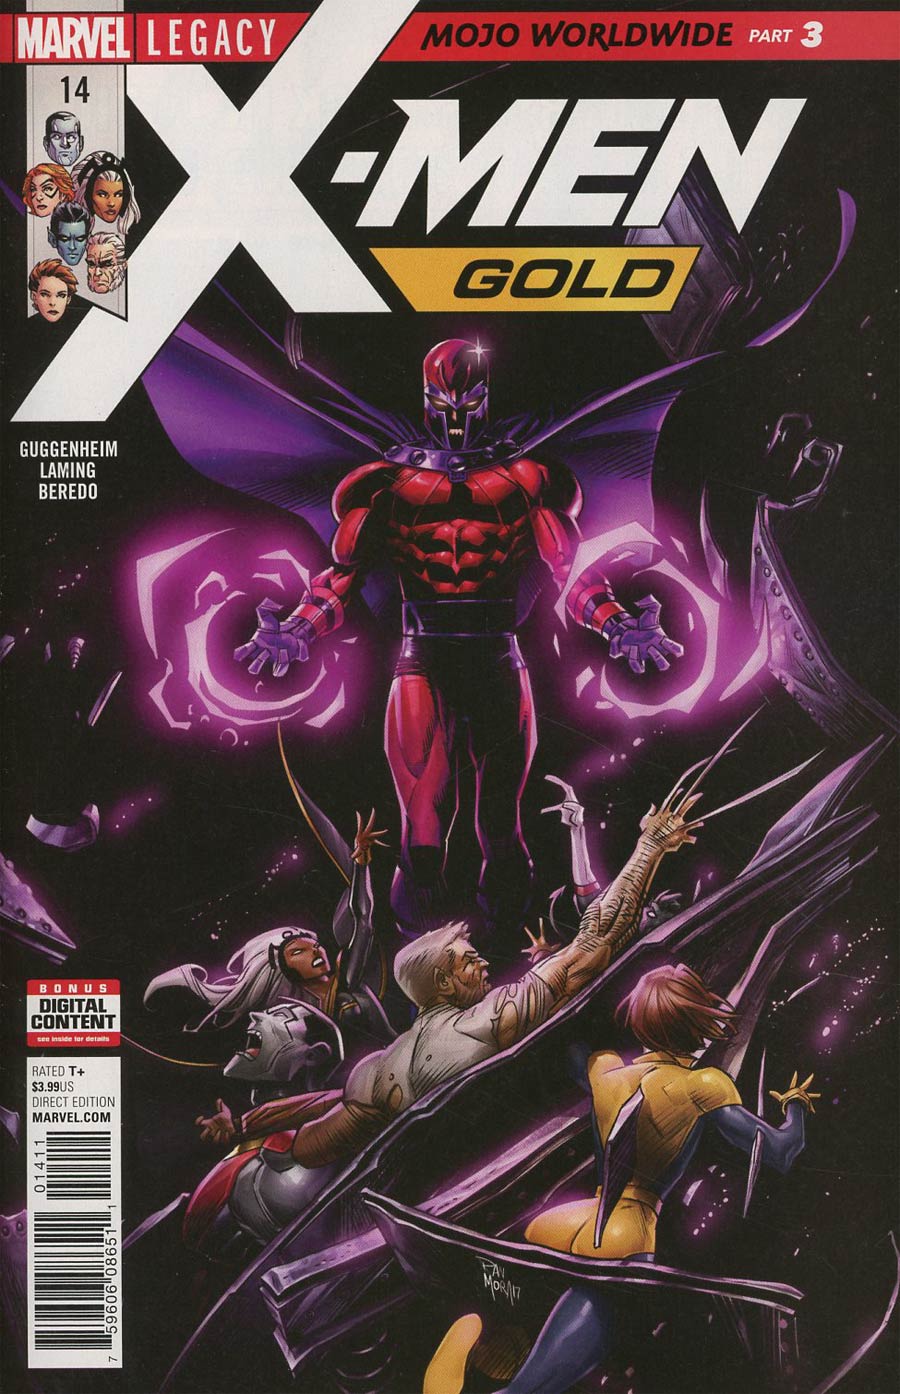 X-Men Gold #14 (Mojo Worldwide Part 3)(Marvel Legacy Tie-In)